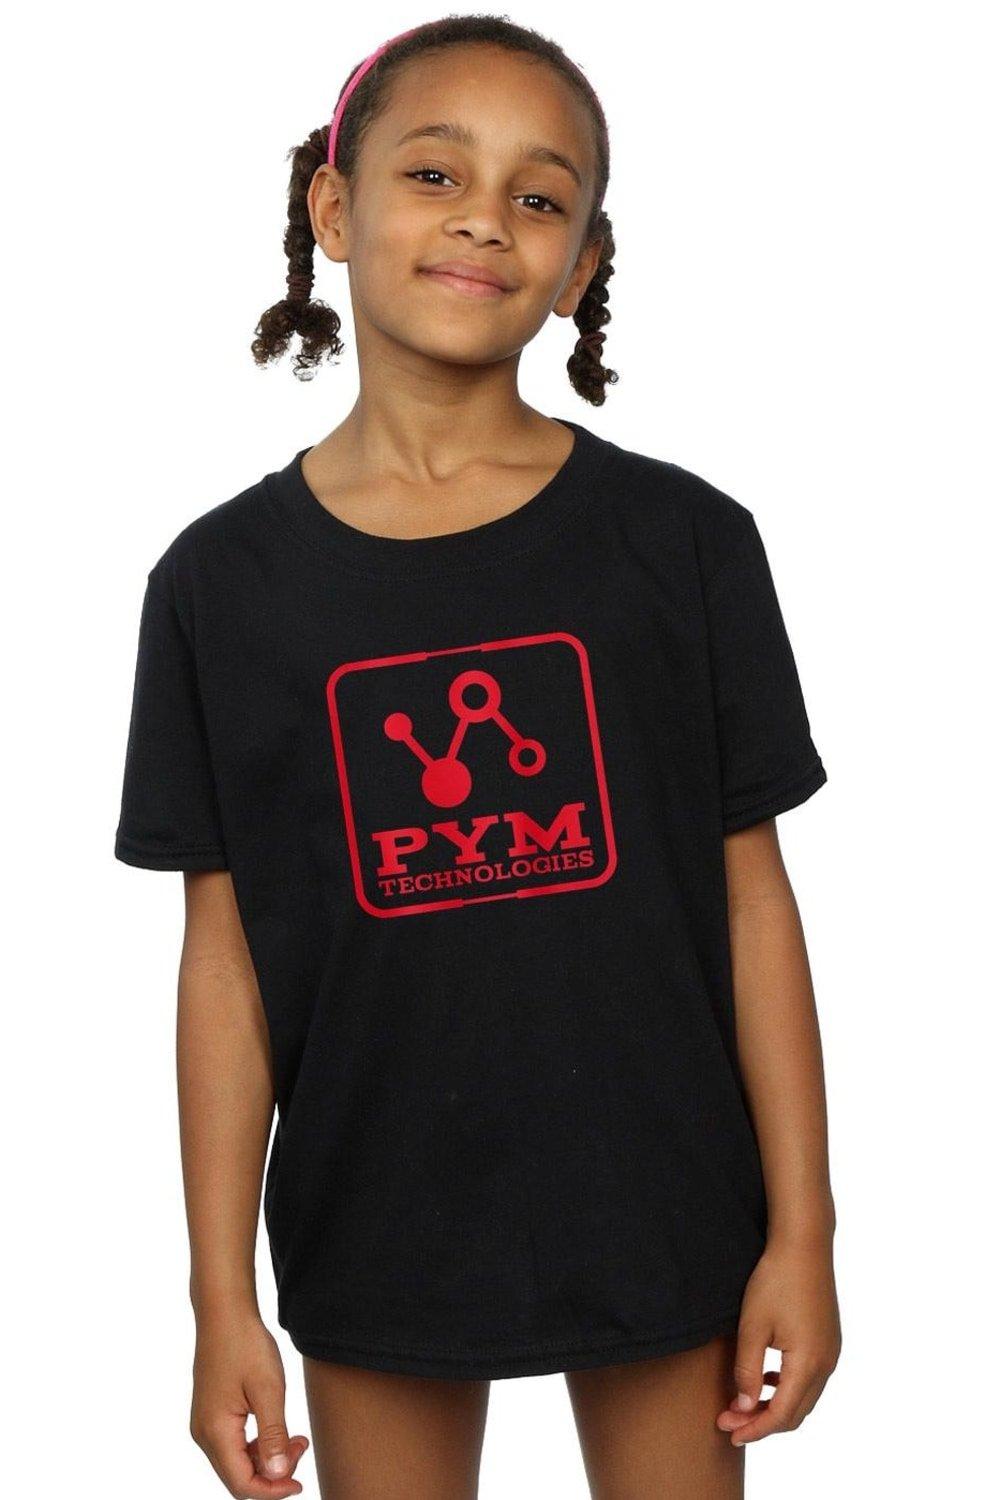 Хлопковая футболка «Человек-муравей и Оса» Pym Technologies Marvel, черный